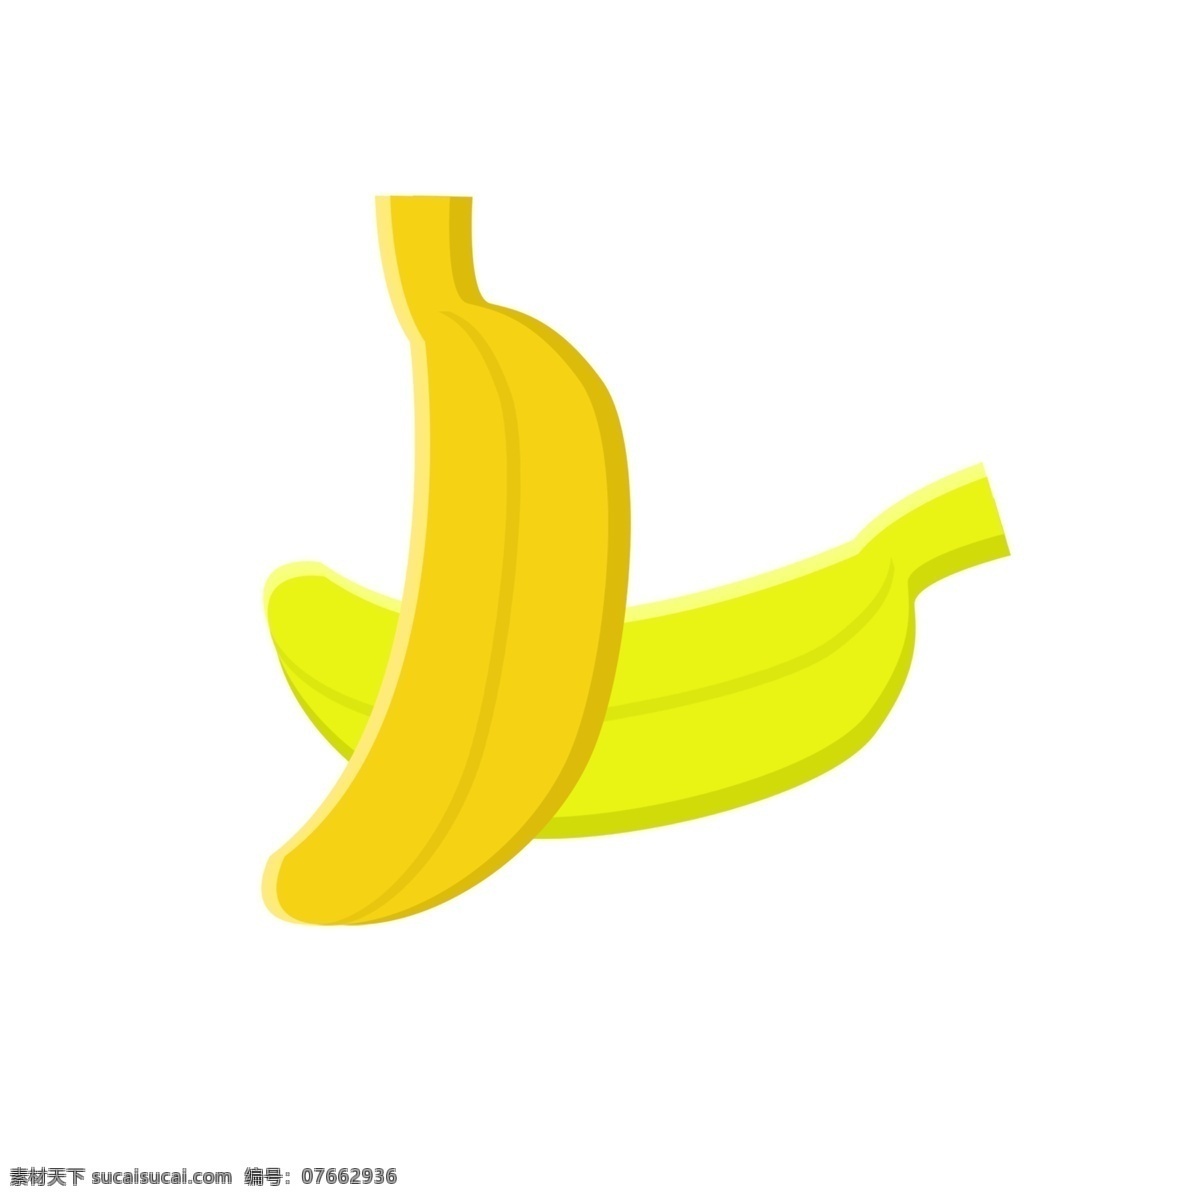 香蕉 黄色 水果 蔬菜 商用 小 元素 黄绿色 果盘 手绘 清新